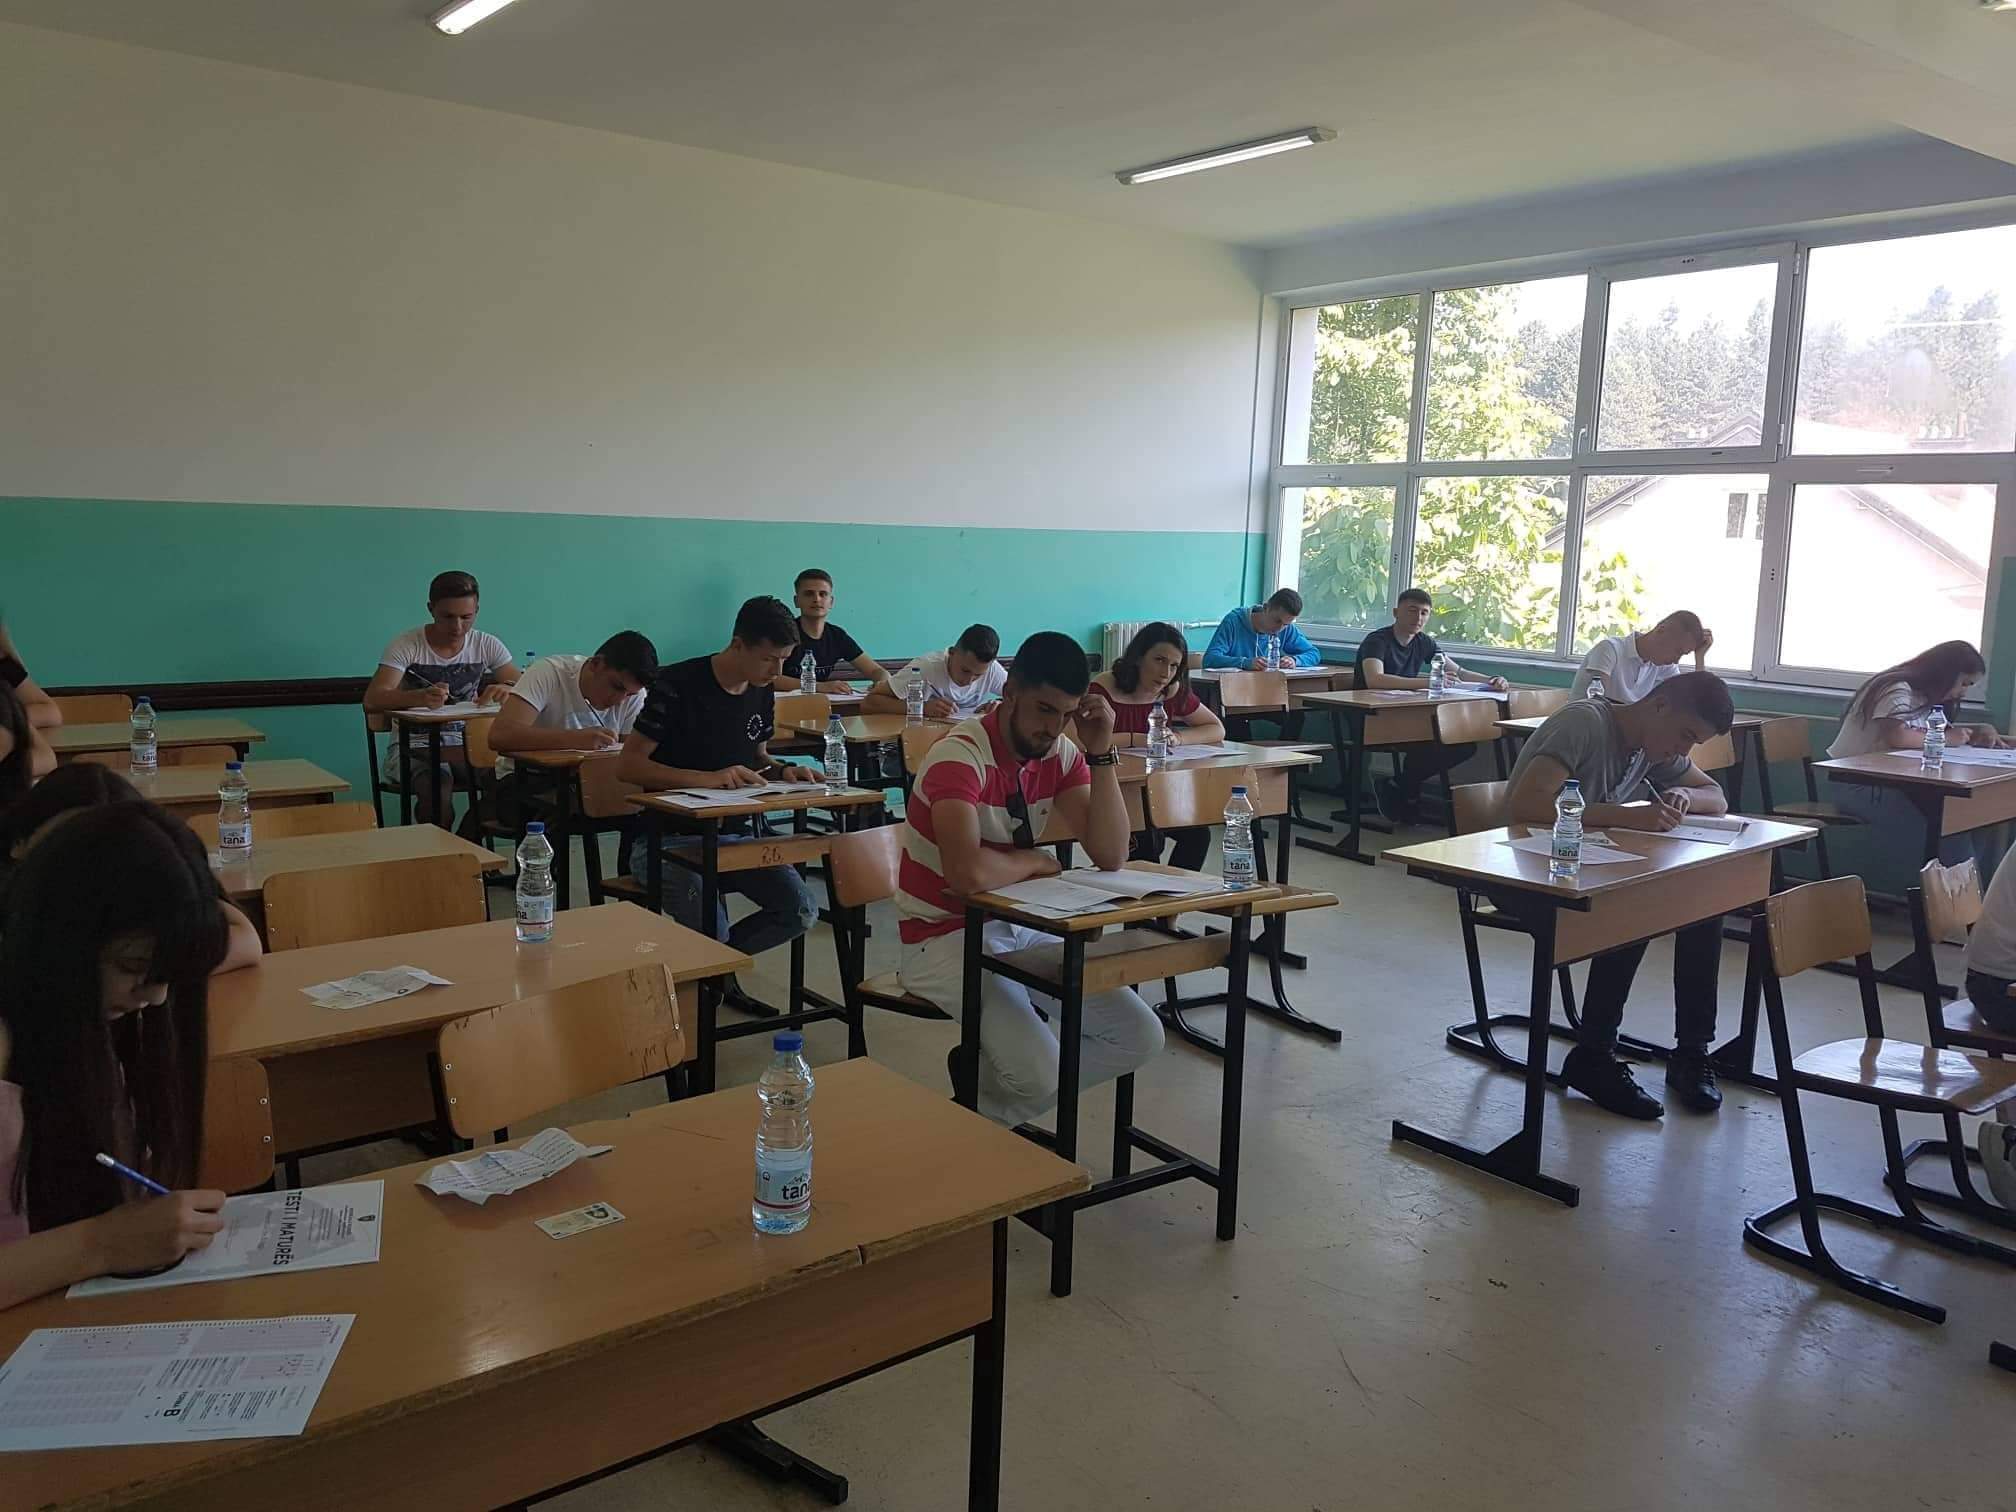 Ka filluar pjesa e dytë e afatit të parë të Testit të Maturës në komunën e Dragashit